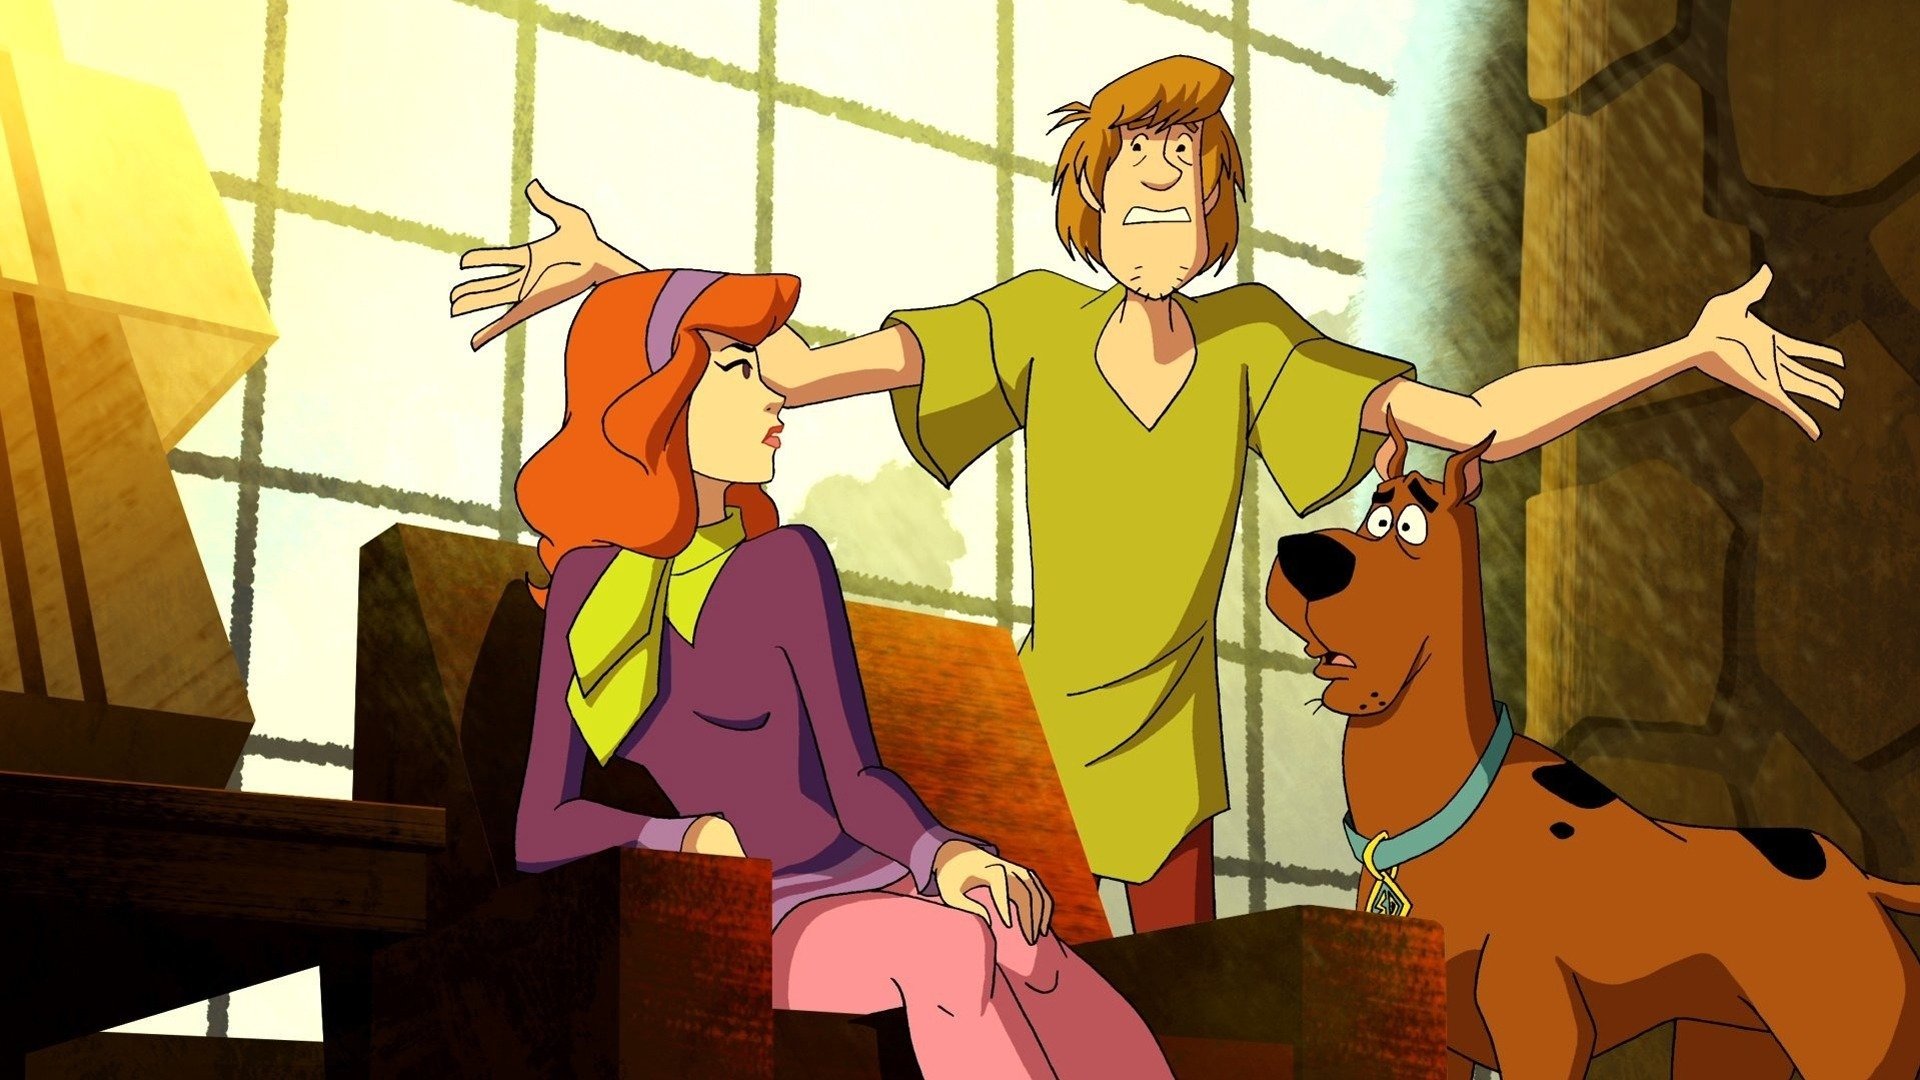 Scooby doo comics. Скуби Ду Корпорация тайна Велма. Скуби Ду the Mystery. Scooby-Doo Mystery 1995. Порода Скуби Ду.